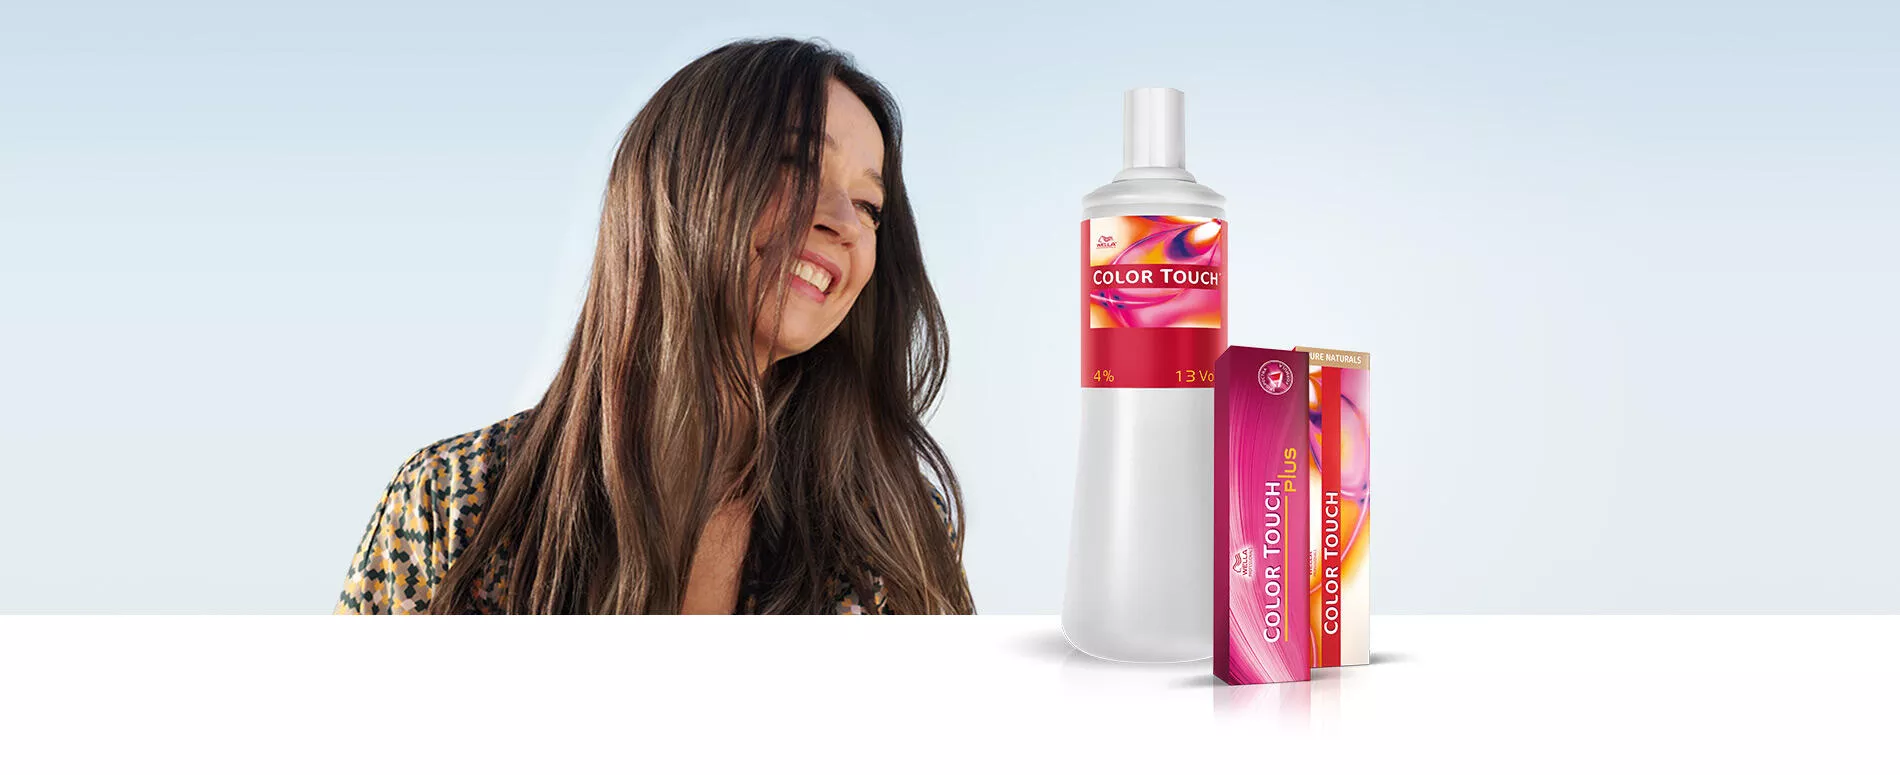 Εικόνα γυναίκας με μακριά καστανά λαμπερά μαλλιά με το προϊόν Wella Professionals Color Touch